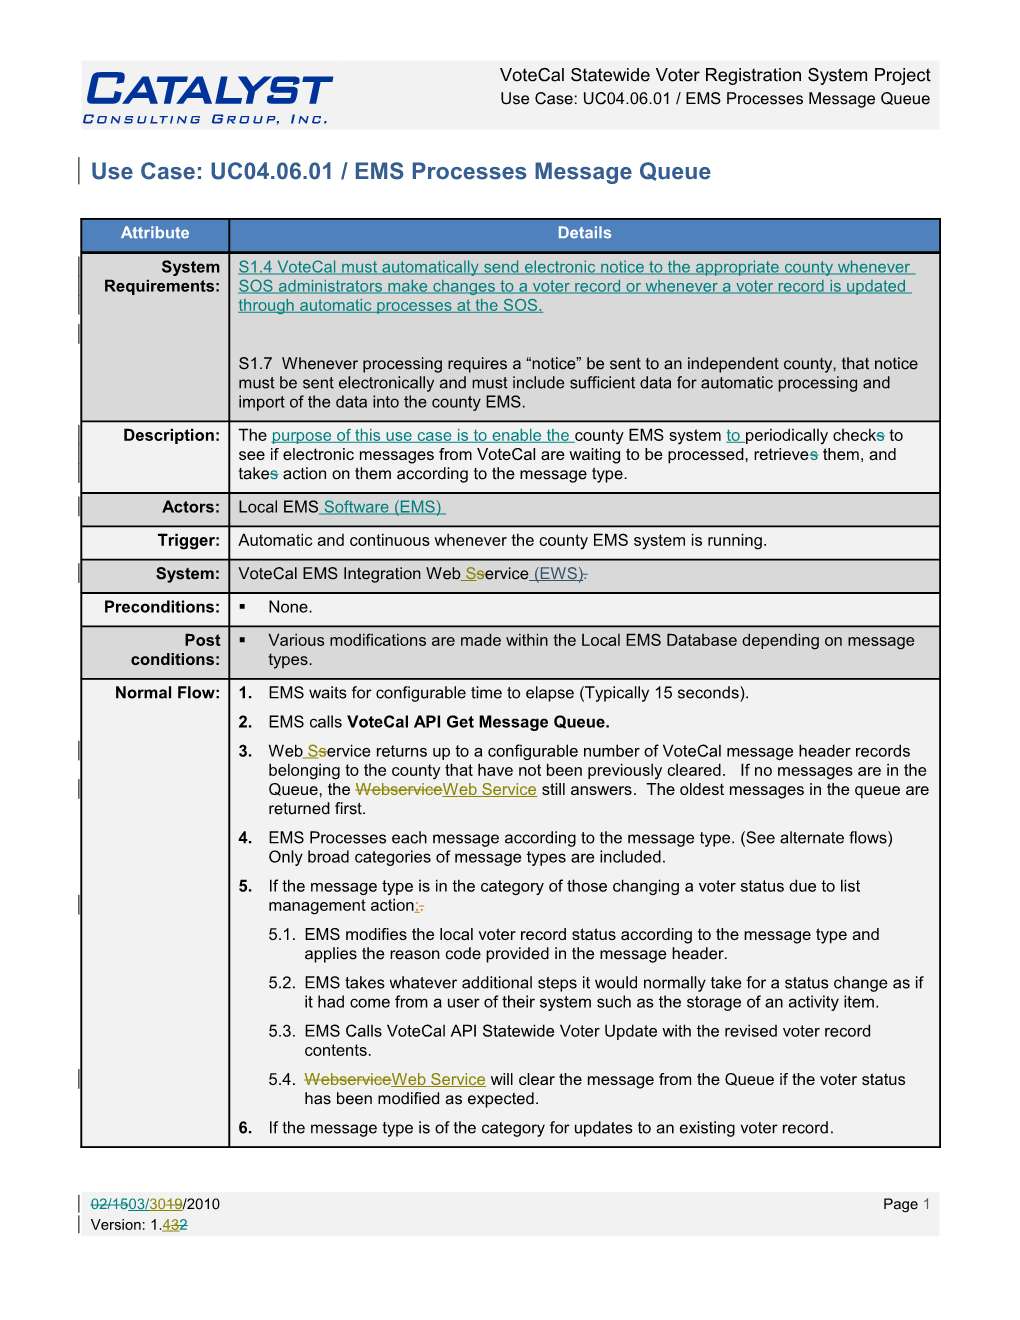 Use Case: UC04.06.01 / EMS Processes Message Queue